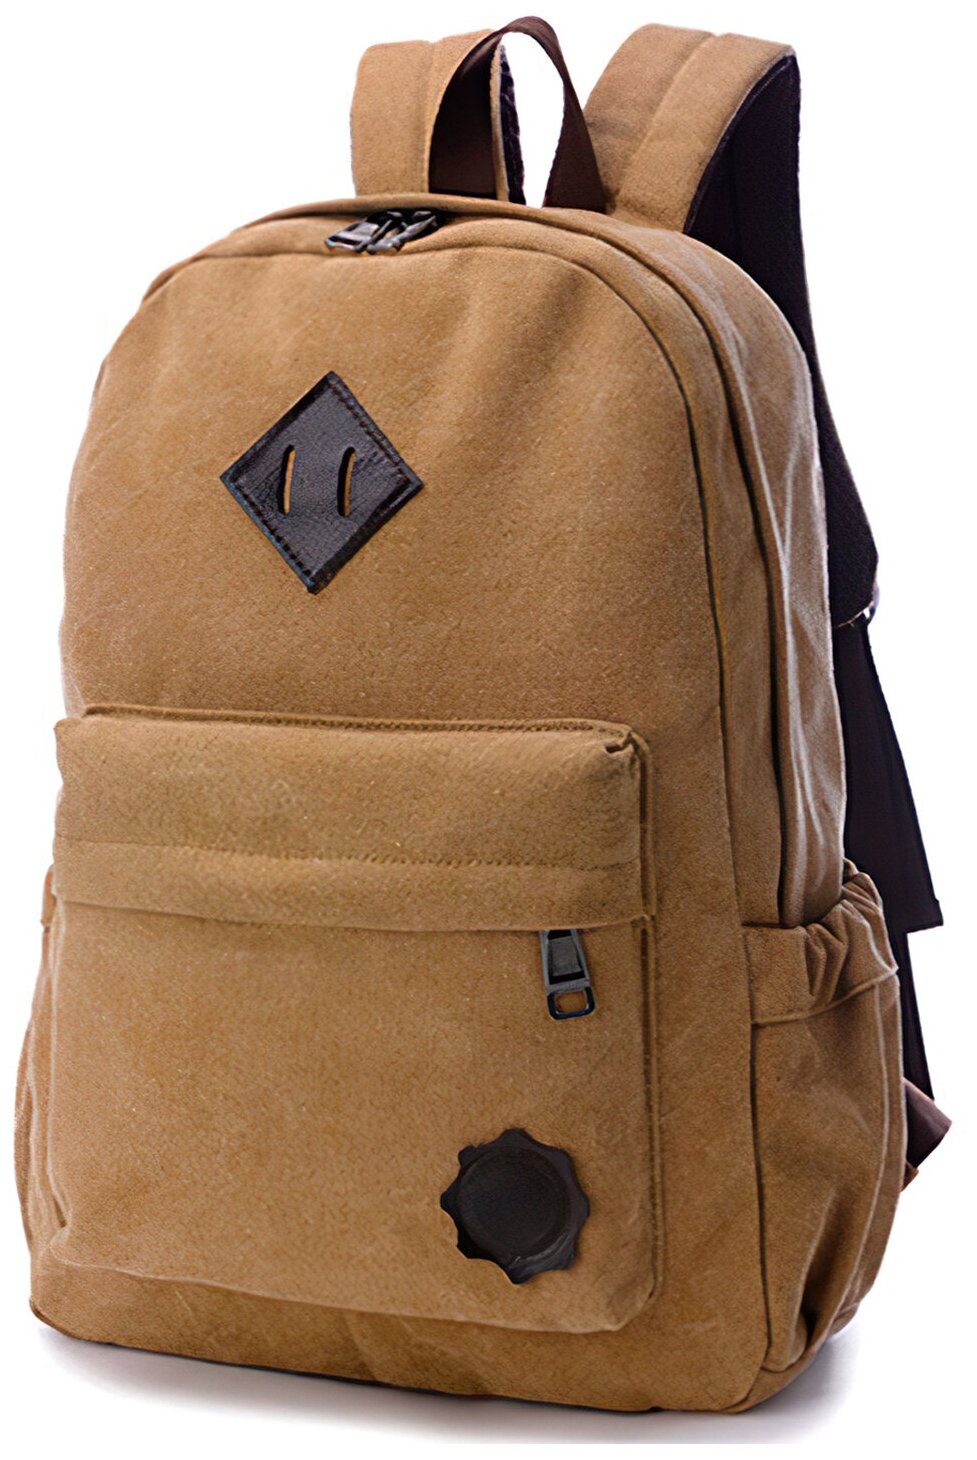 Стильный винтажный повседневный рюкзак / школьный портфель / спортивный , особопрочный сумка рюкзачок